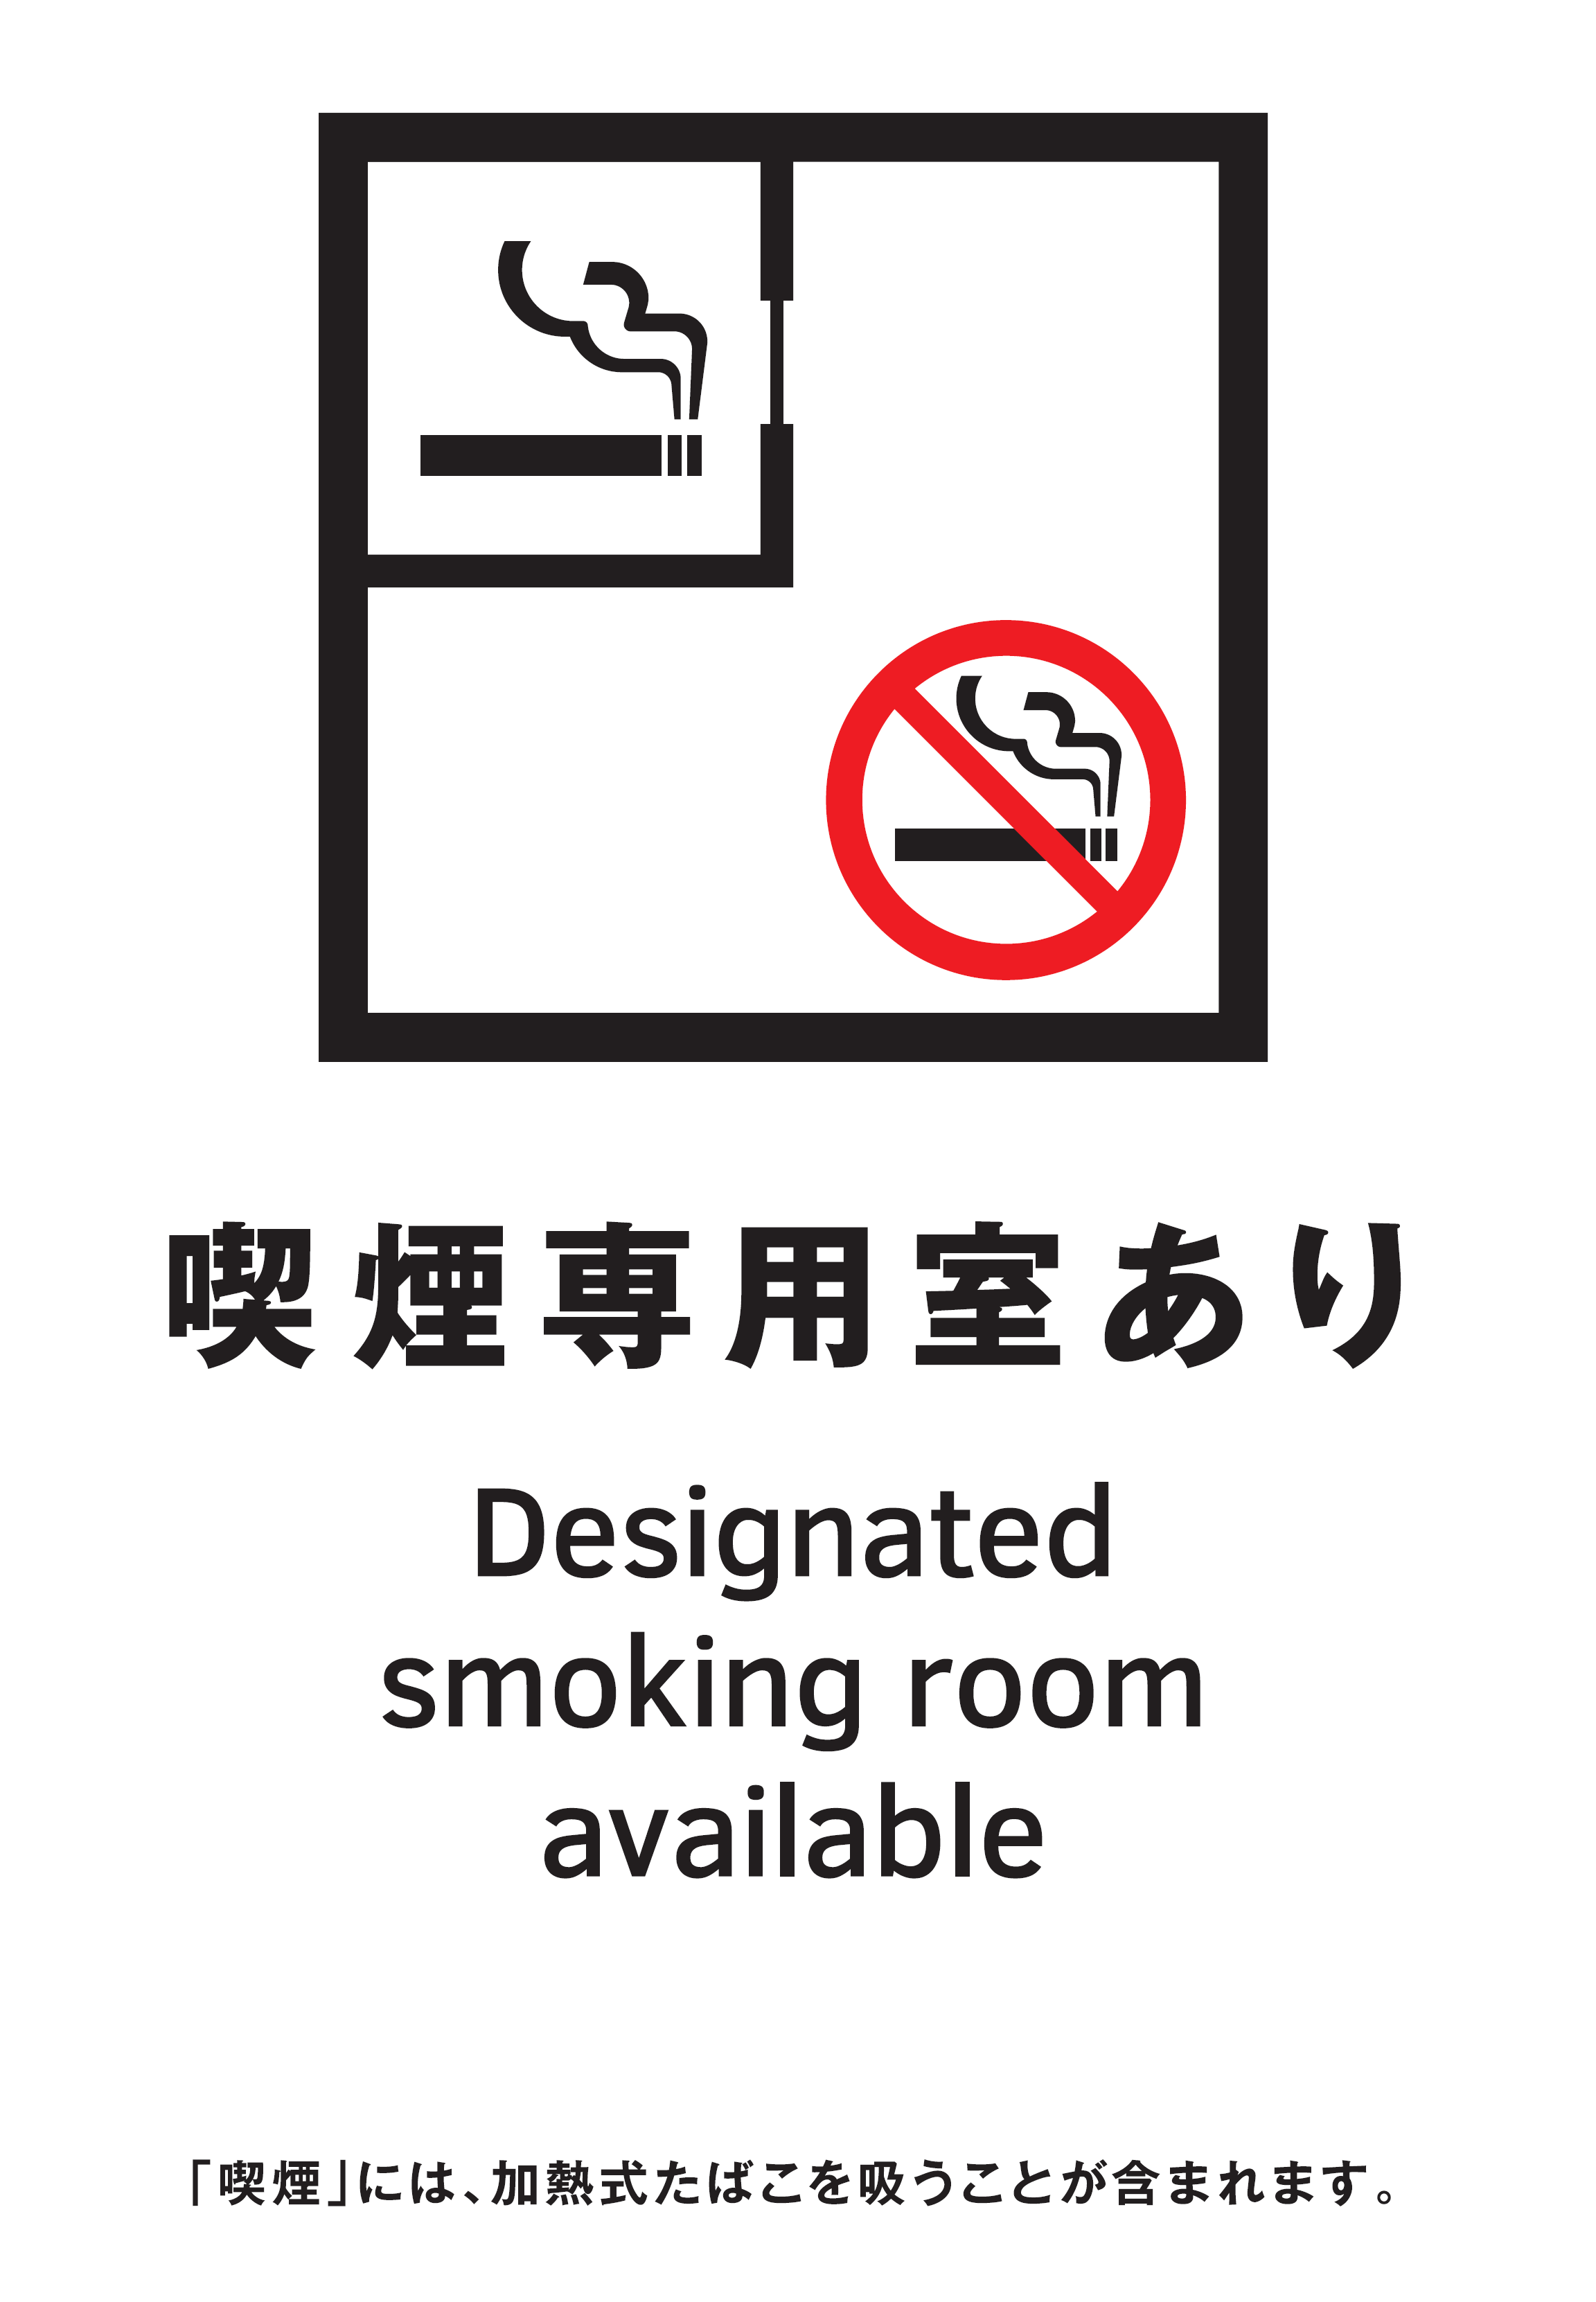 喫煙専用室設置施設の標識